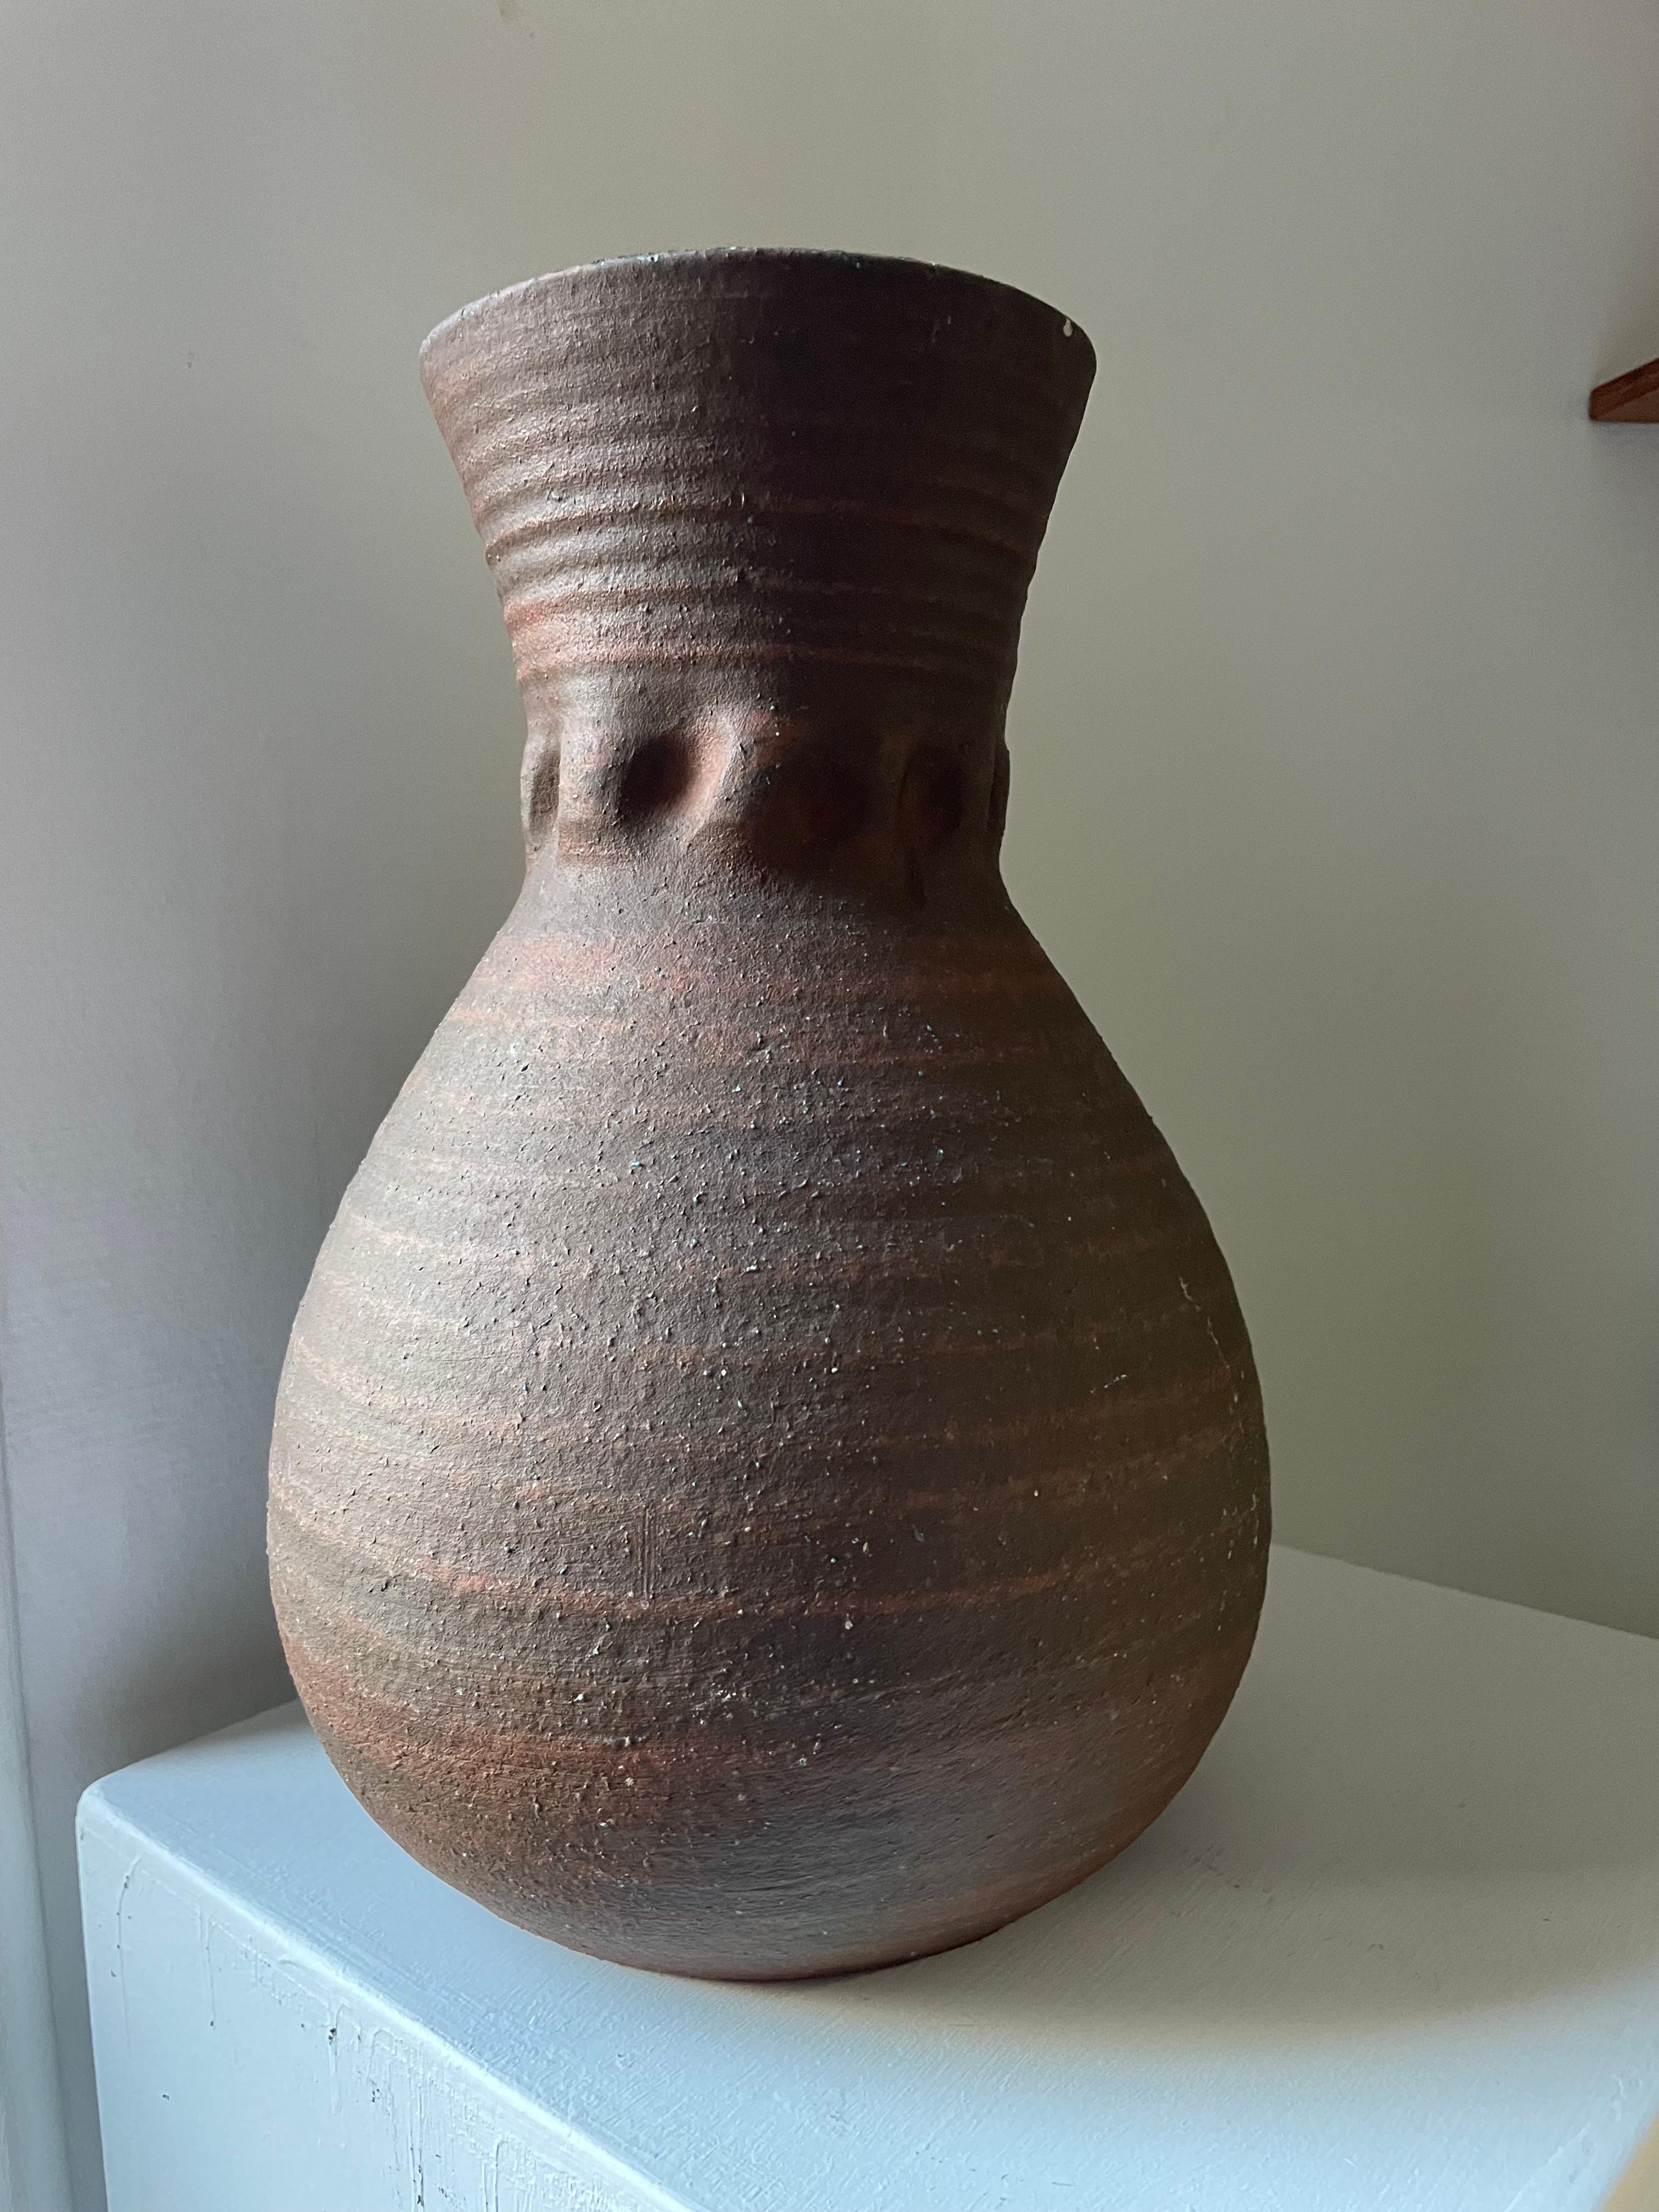 Grand vase en céramique des potiers d'Accolay, série brun gaulois, circa 1960 vintage.
Excellent état, rien à signaler
Poids lourd

Dimensions :
H29.5cm